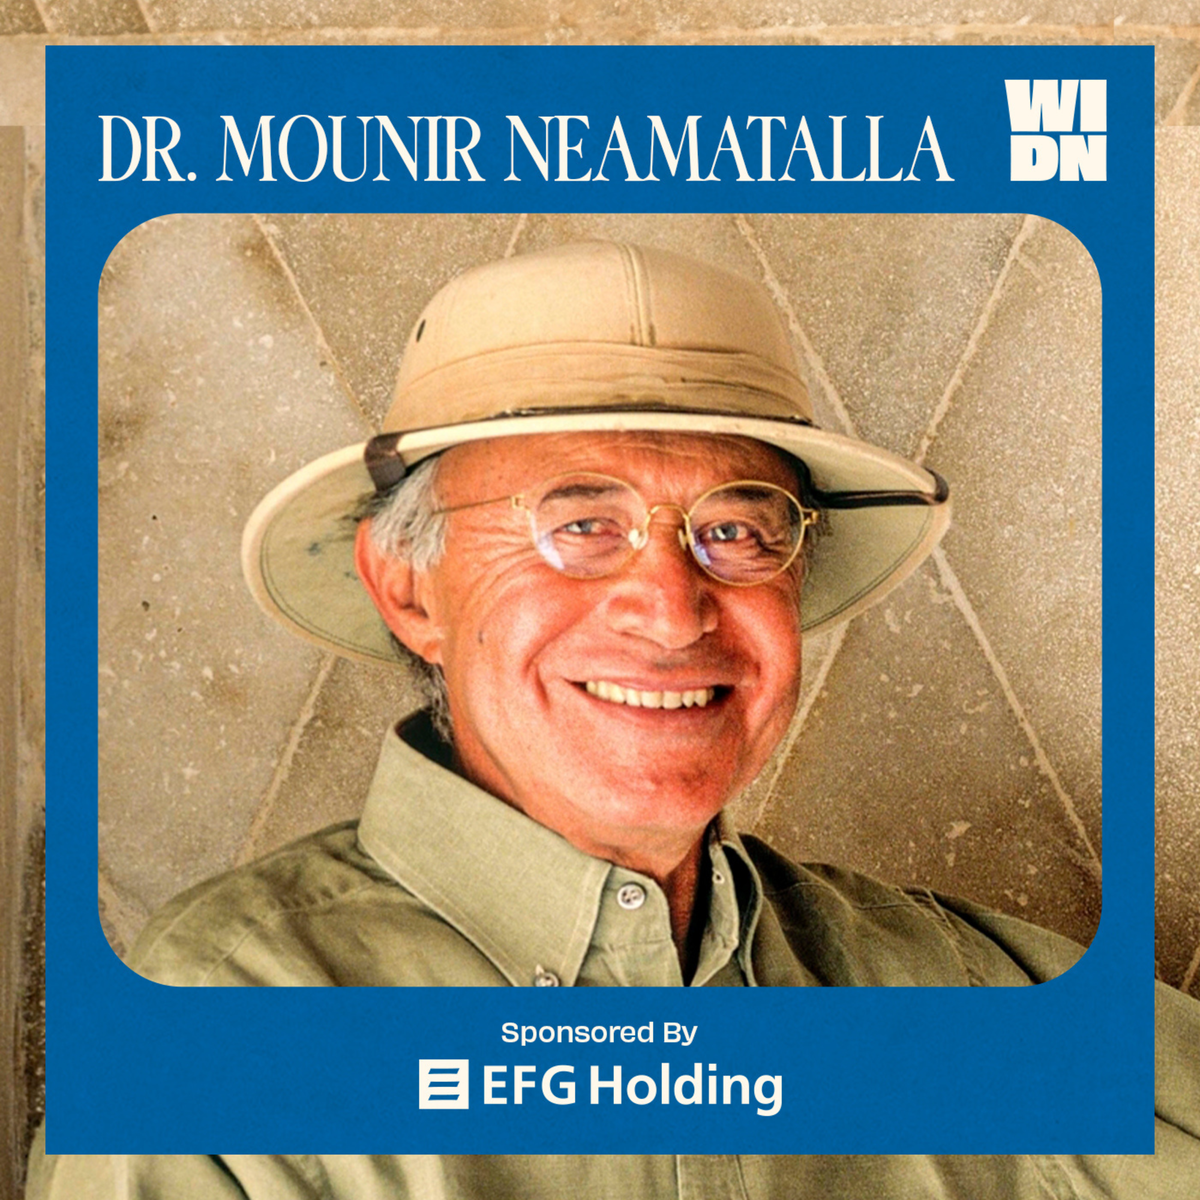 Dr. Mounir Neamatalla